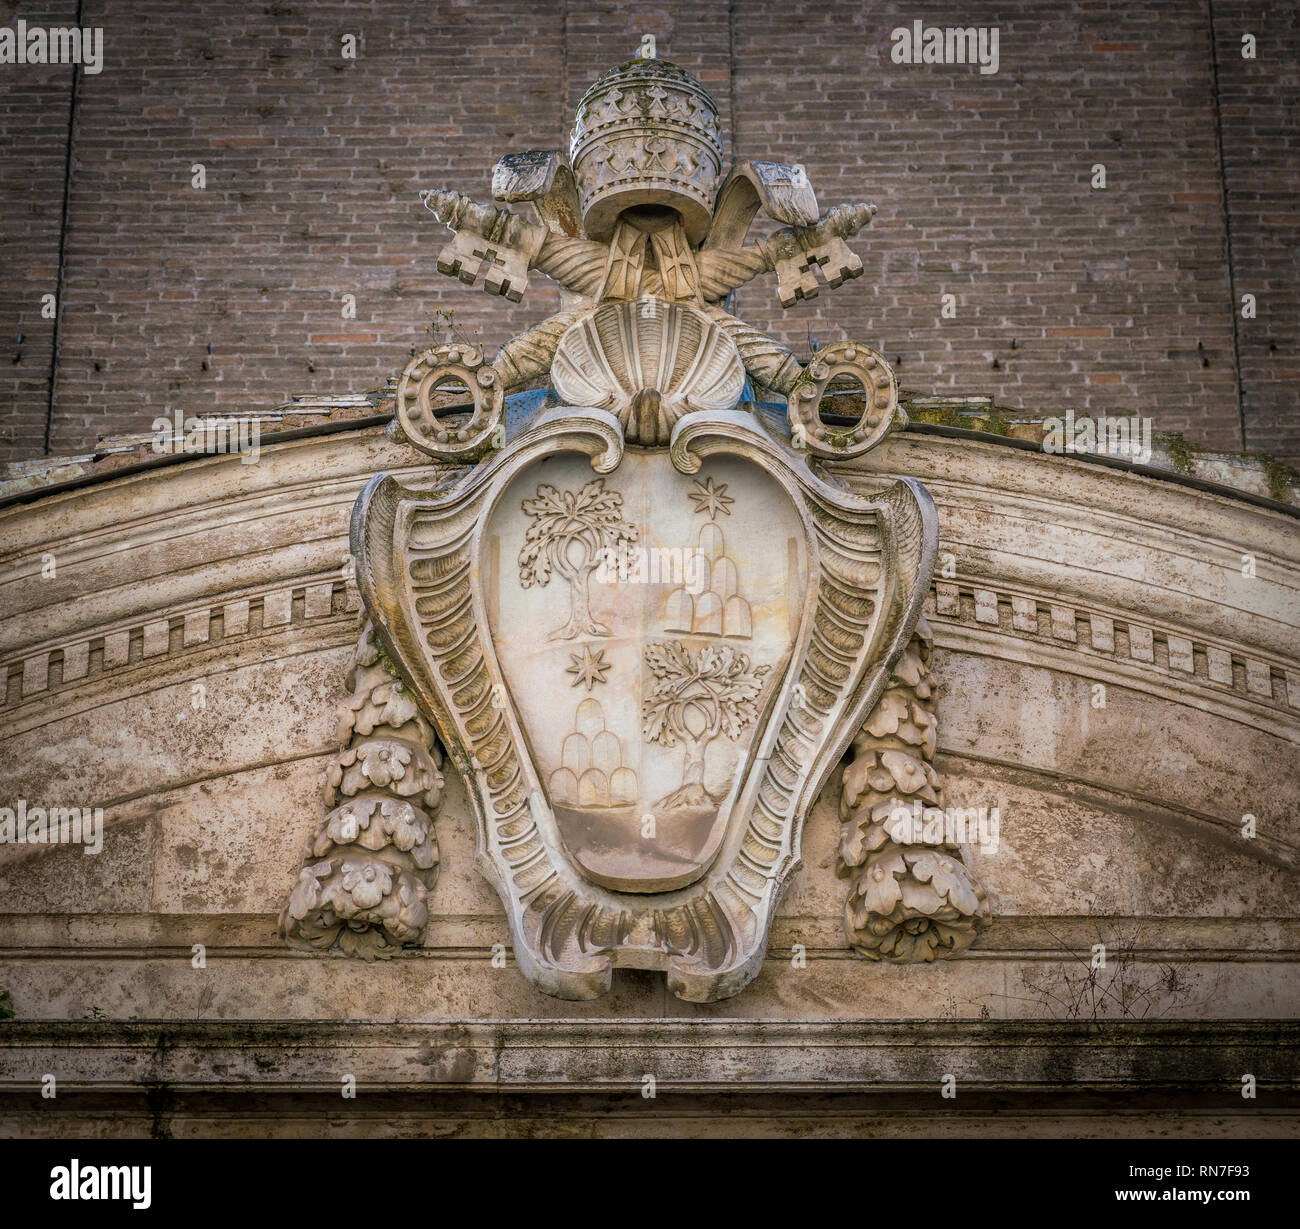 Alexandre VII armoiries sur l'extérieur de l'église de Santo Spirito in Sassia. Rome, Italie. Banque D'Images